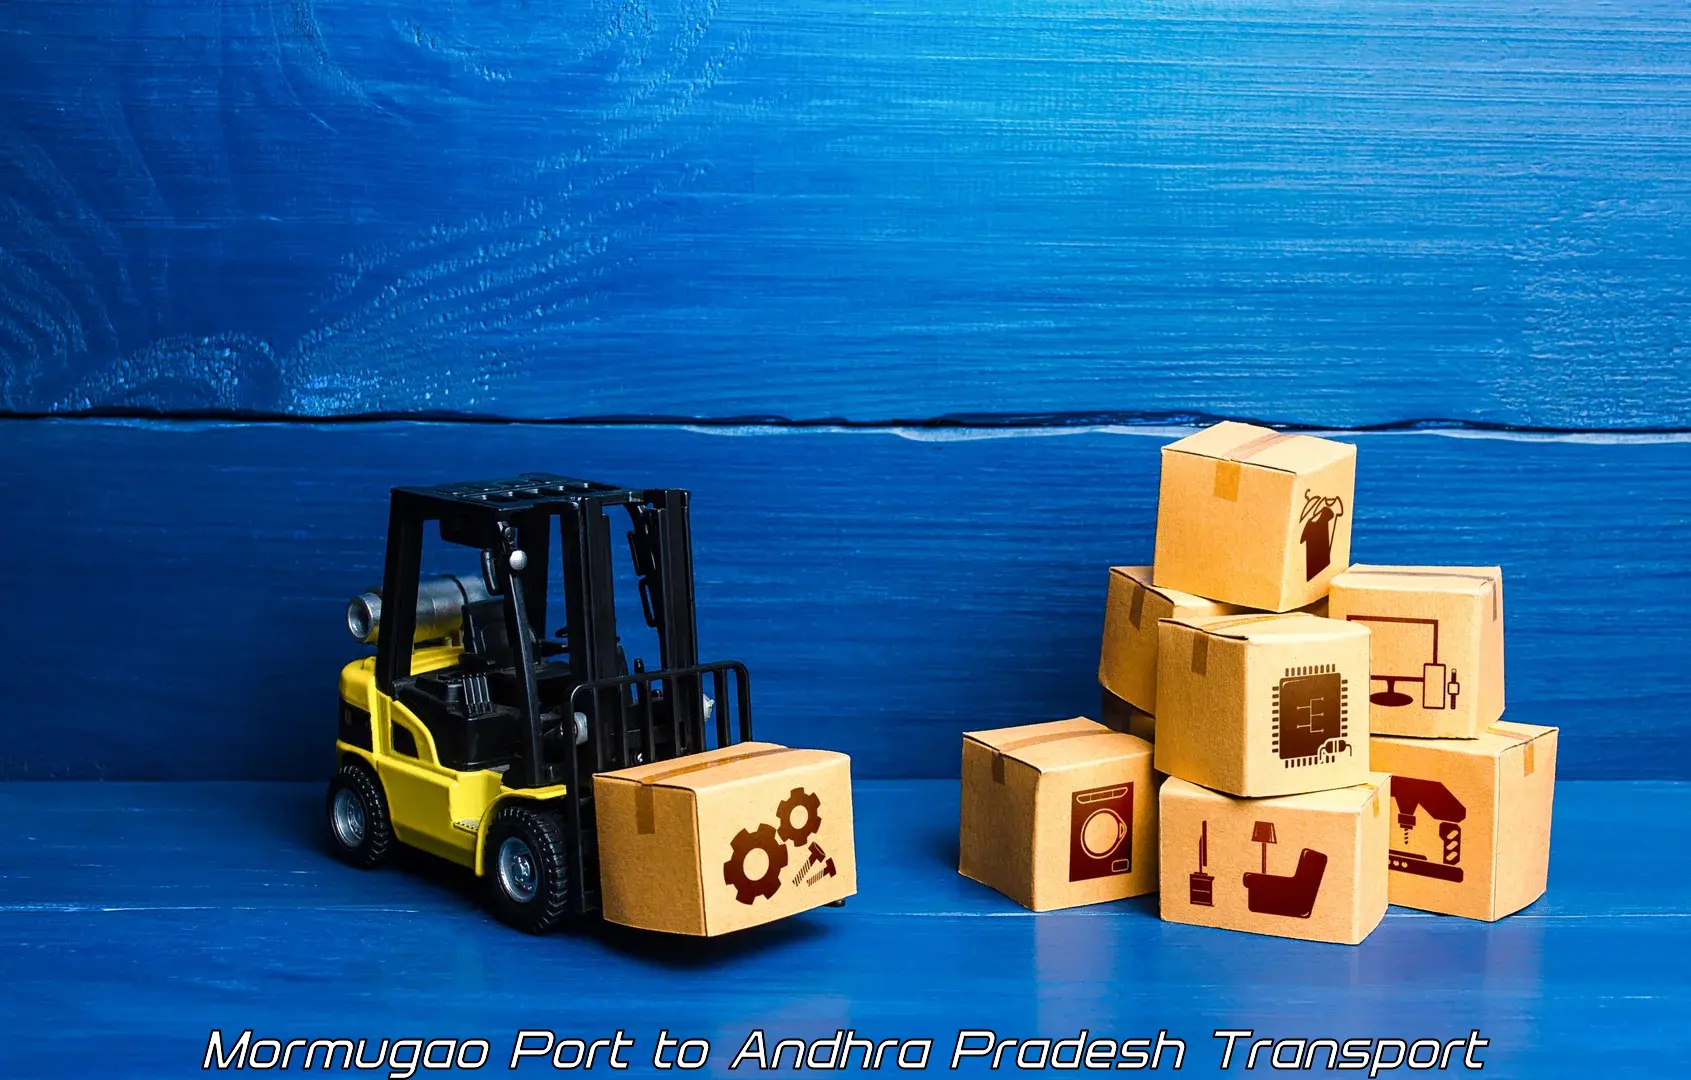 Nearest transport service Mormugao Port to Andhra Pradesh